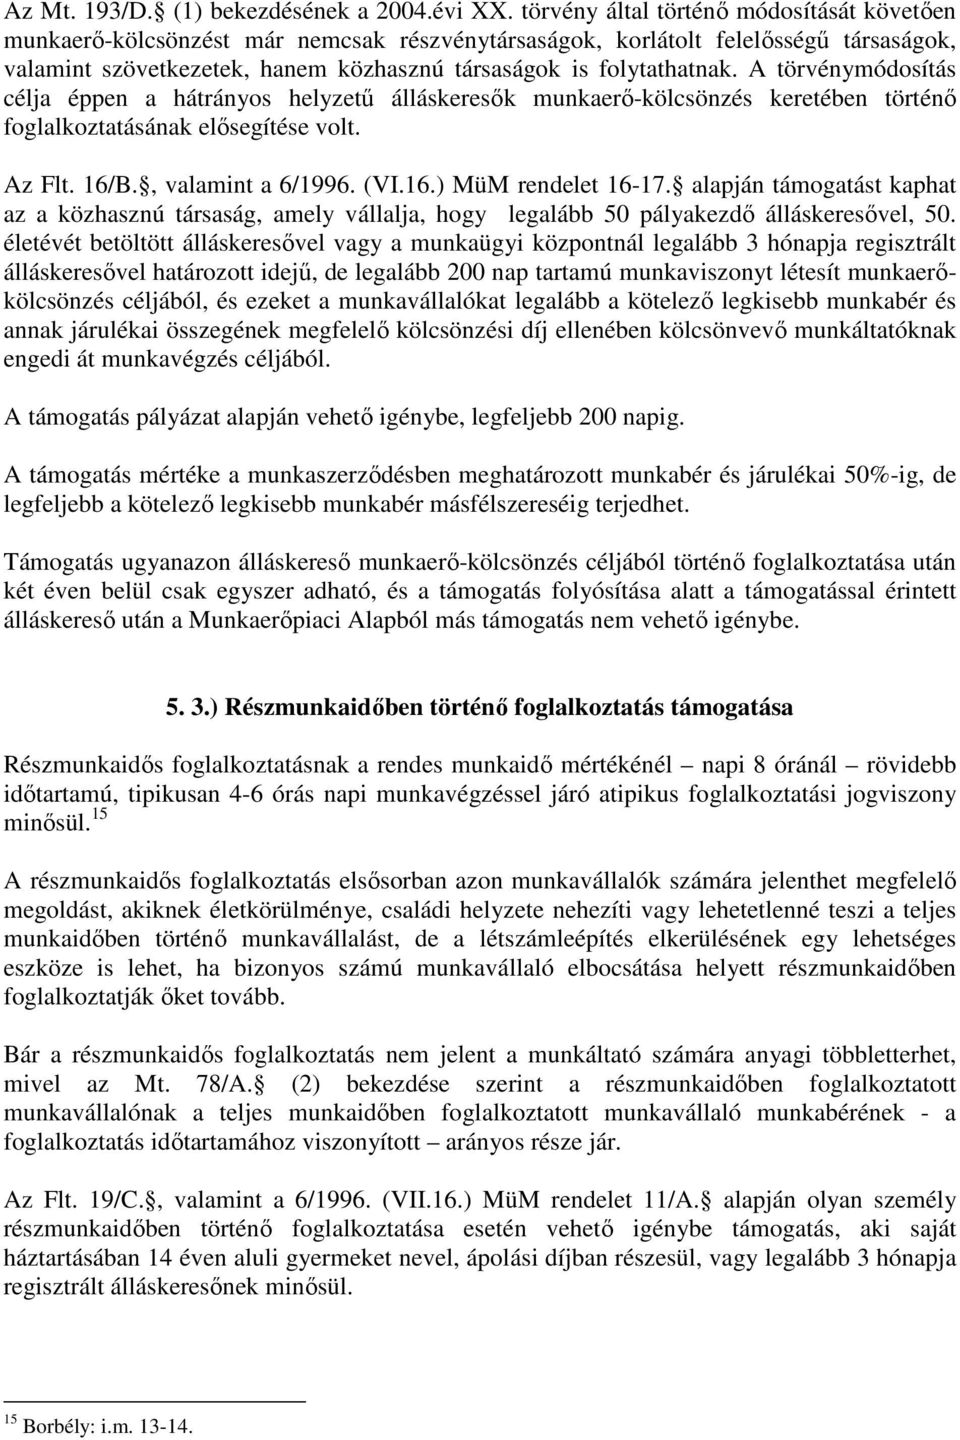 A törvénymódosítás célja éppen a hátrányos helyzető álláskeresık munkaerı-kölcsönzés keretében történı foglalkoztatásának elısegítése volt. Az Flt. 16/B., valamint a 6/1996. (VI.16.) MüM rendelet 16-17.